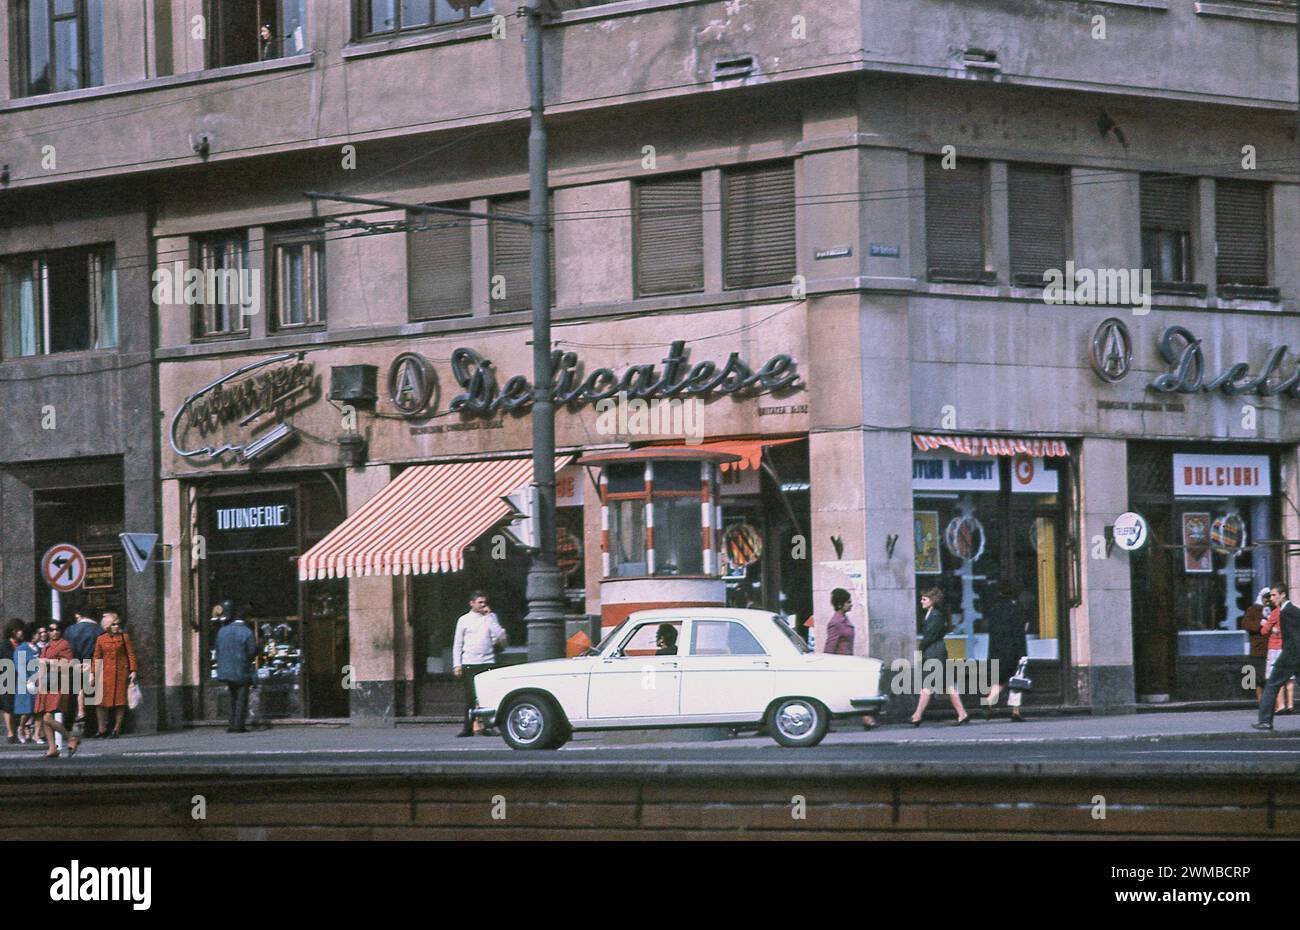 Bukarest, Rumänien, ca. 1979. Eine tägliche Szene in der Innenstadt von Bukarest. Auf dem Bürgersteig, an der Straßenecke, befindet sich ein rot-weißer Polizeiposten (Militia). Stockfoto